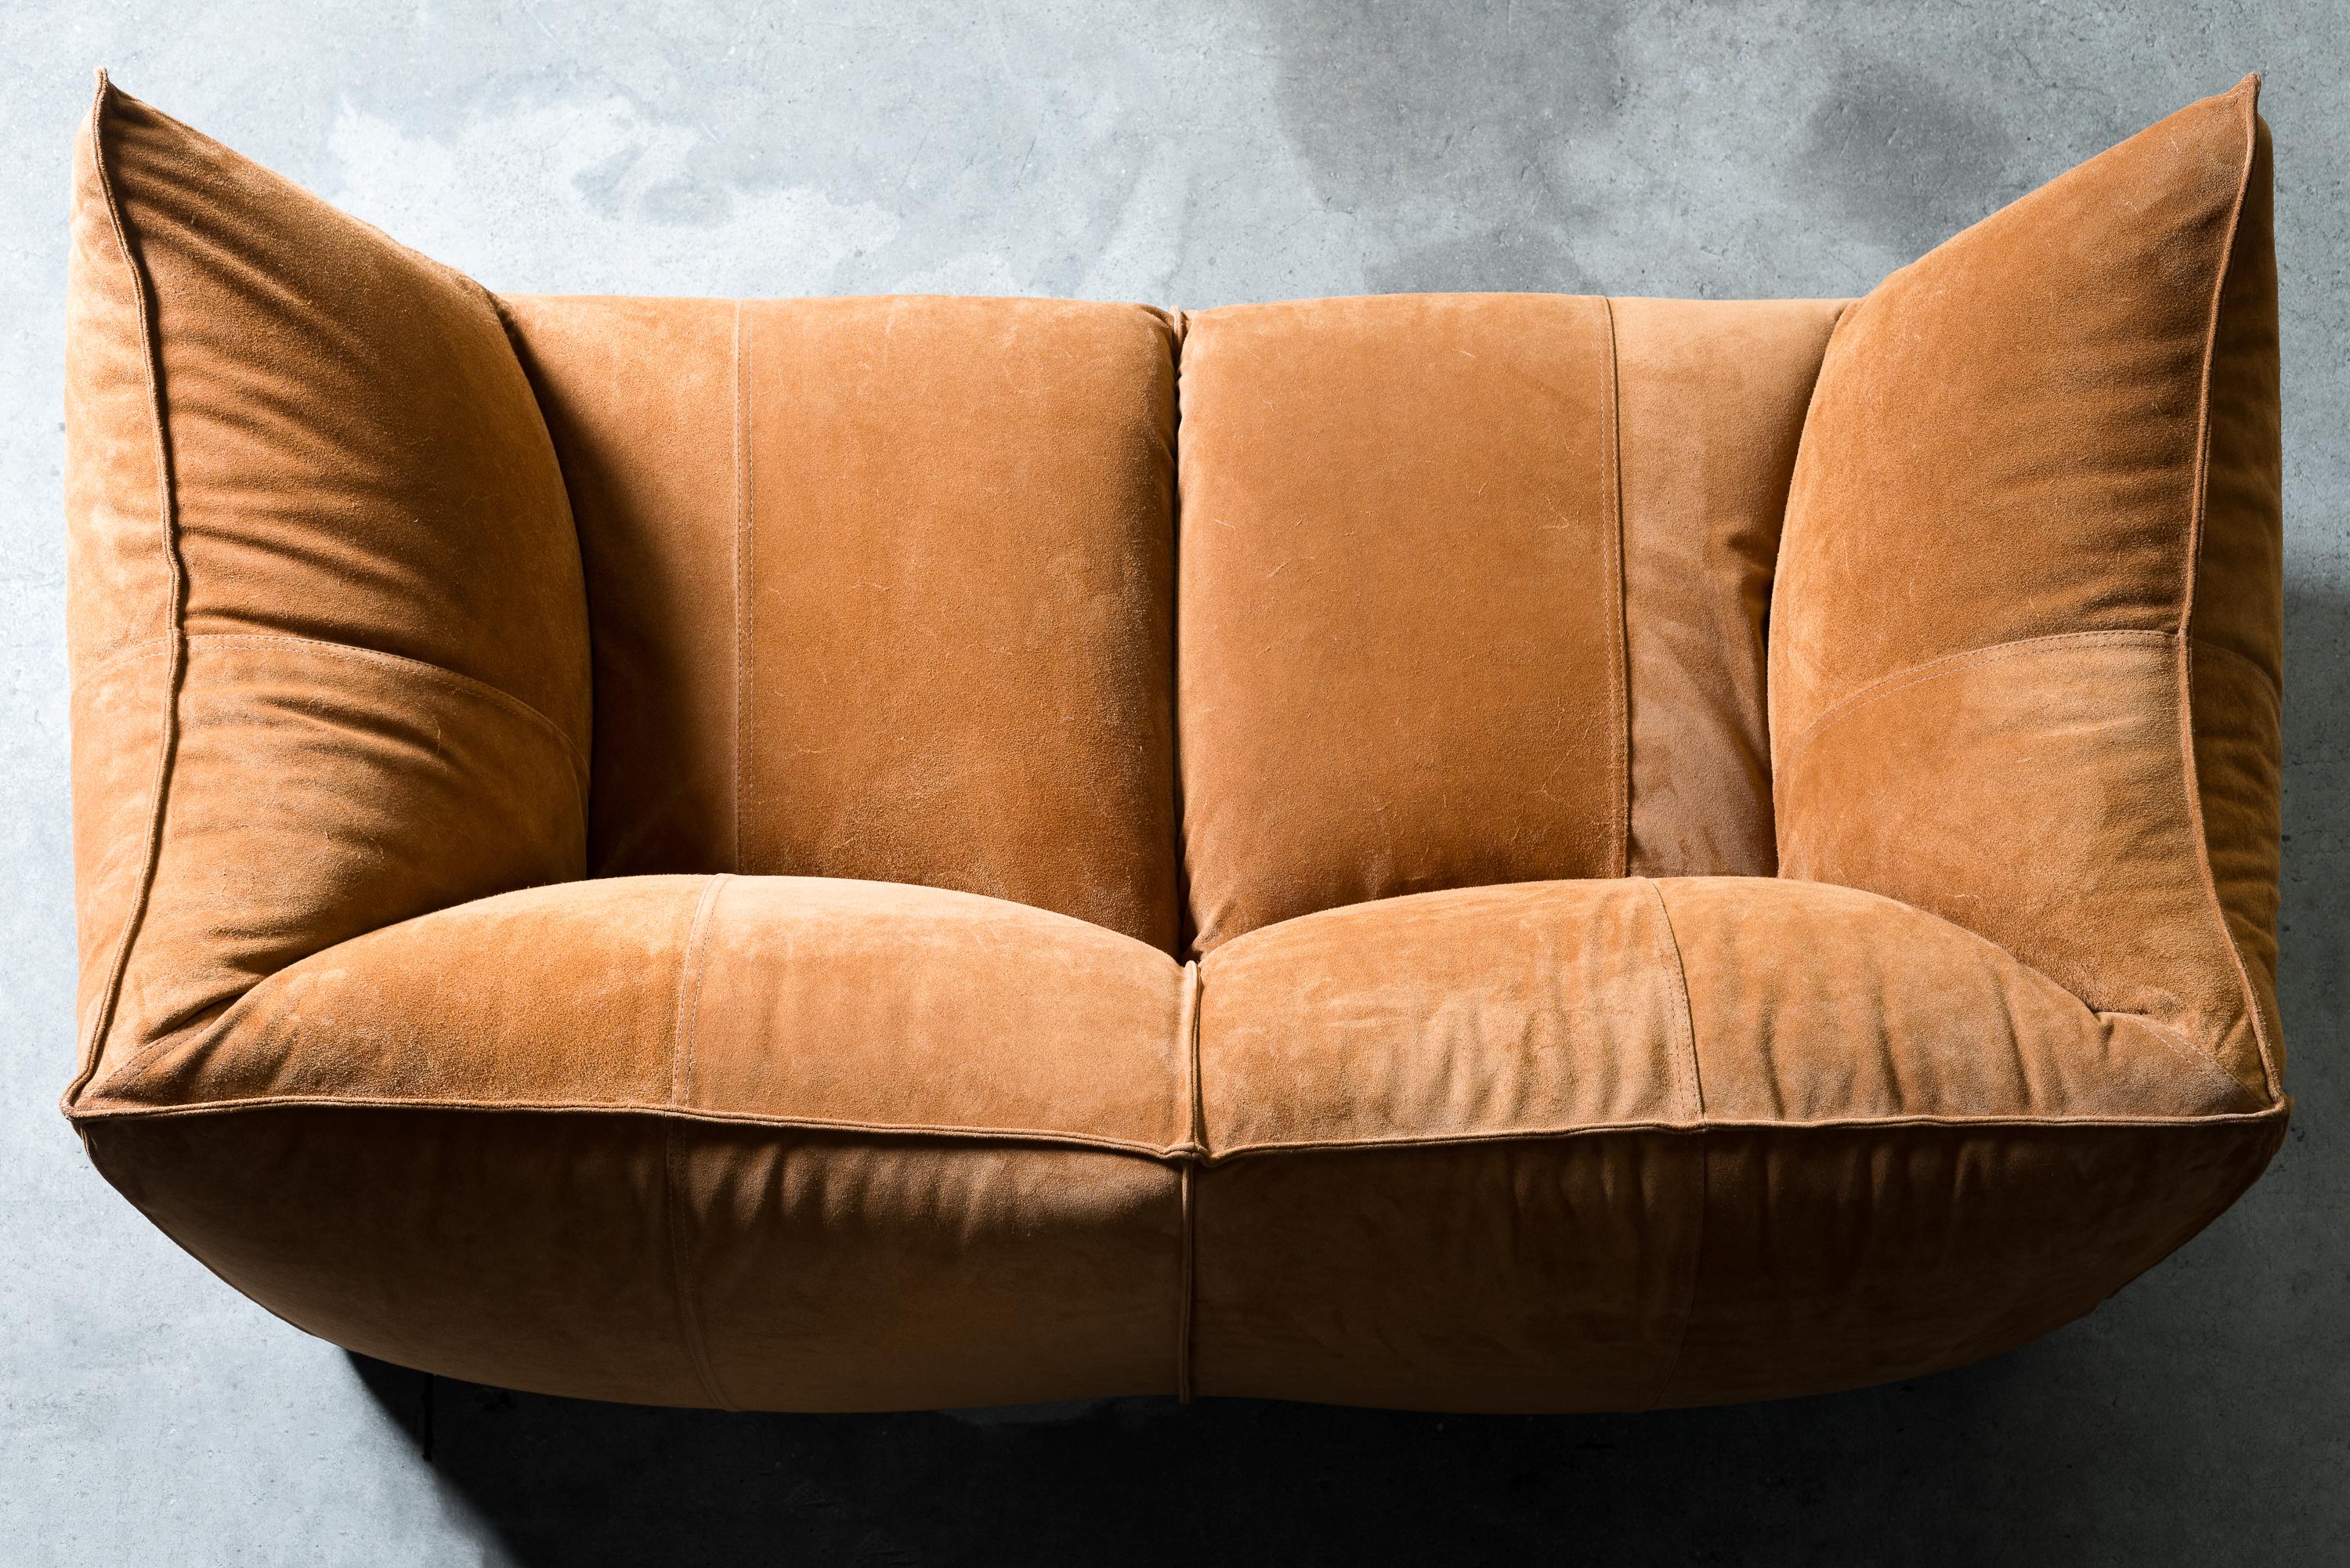 B&B Italia Le Bambole sofa in Suede Leather 2